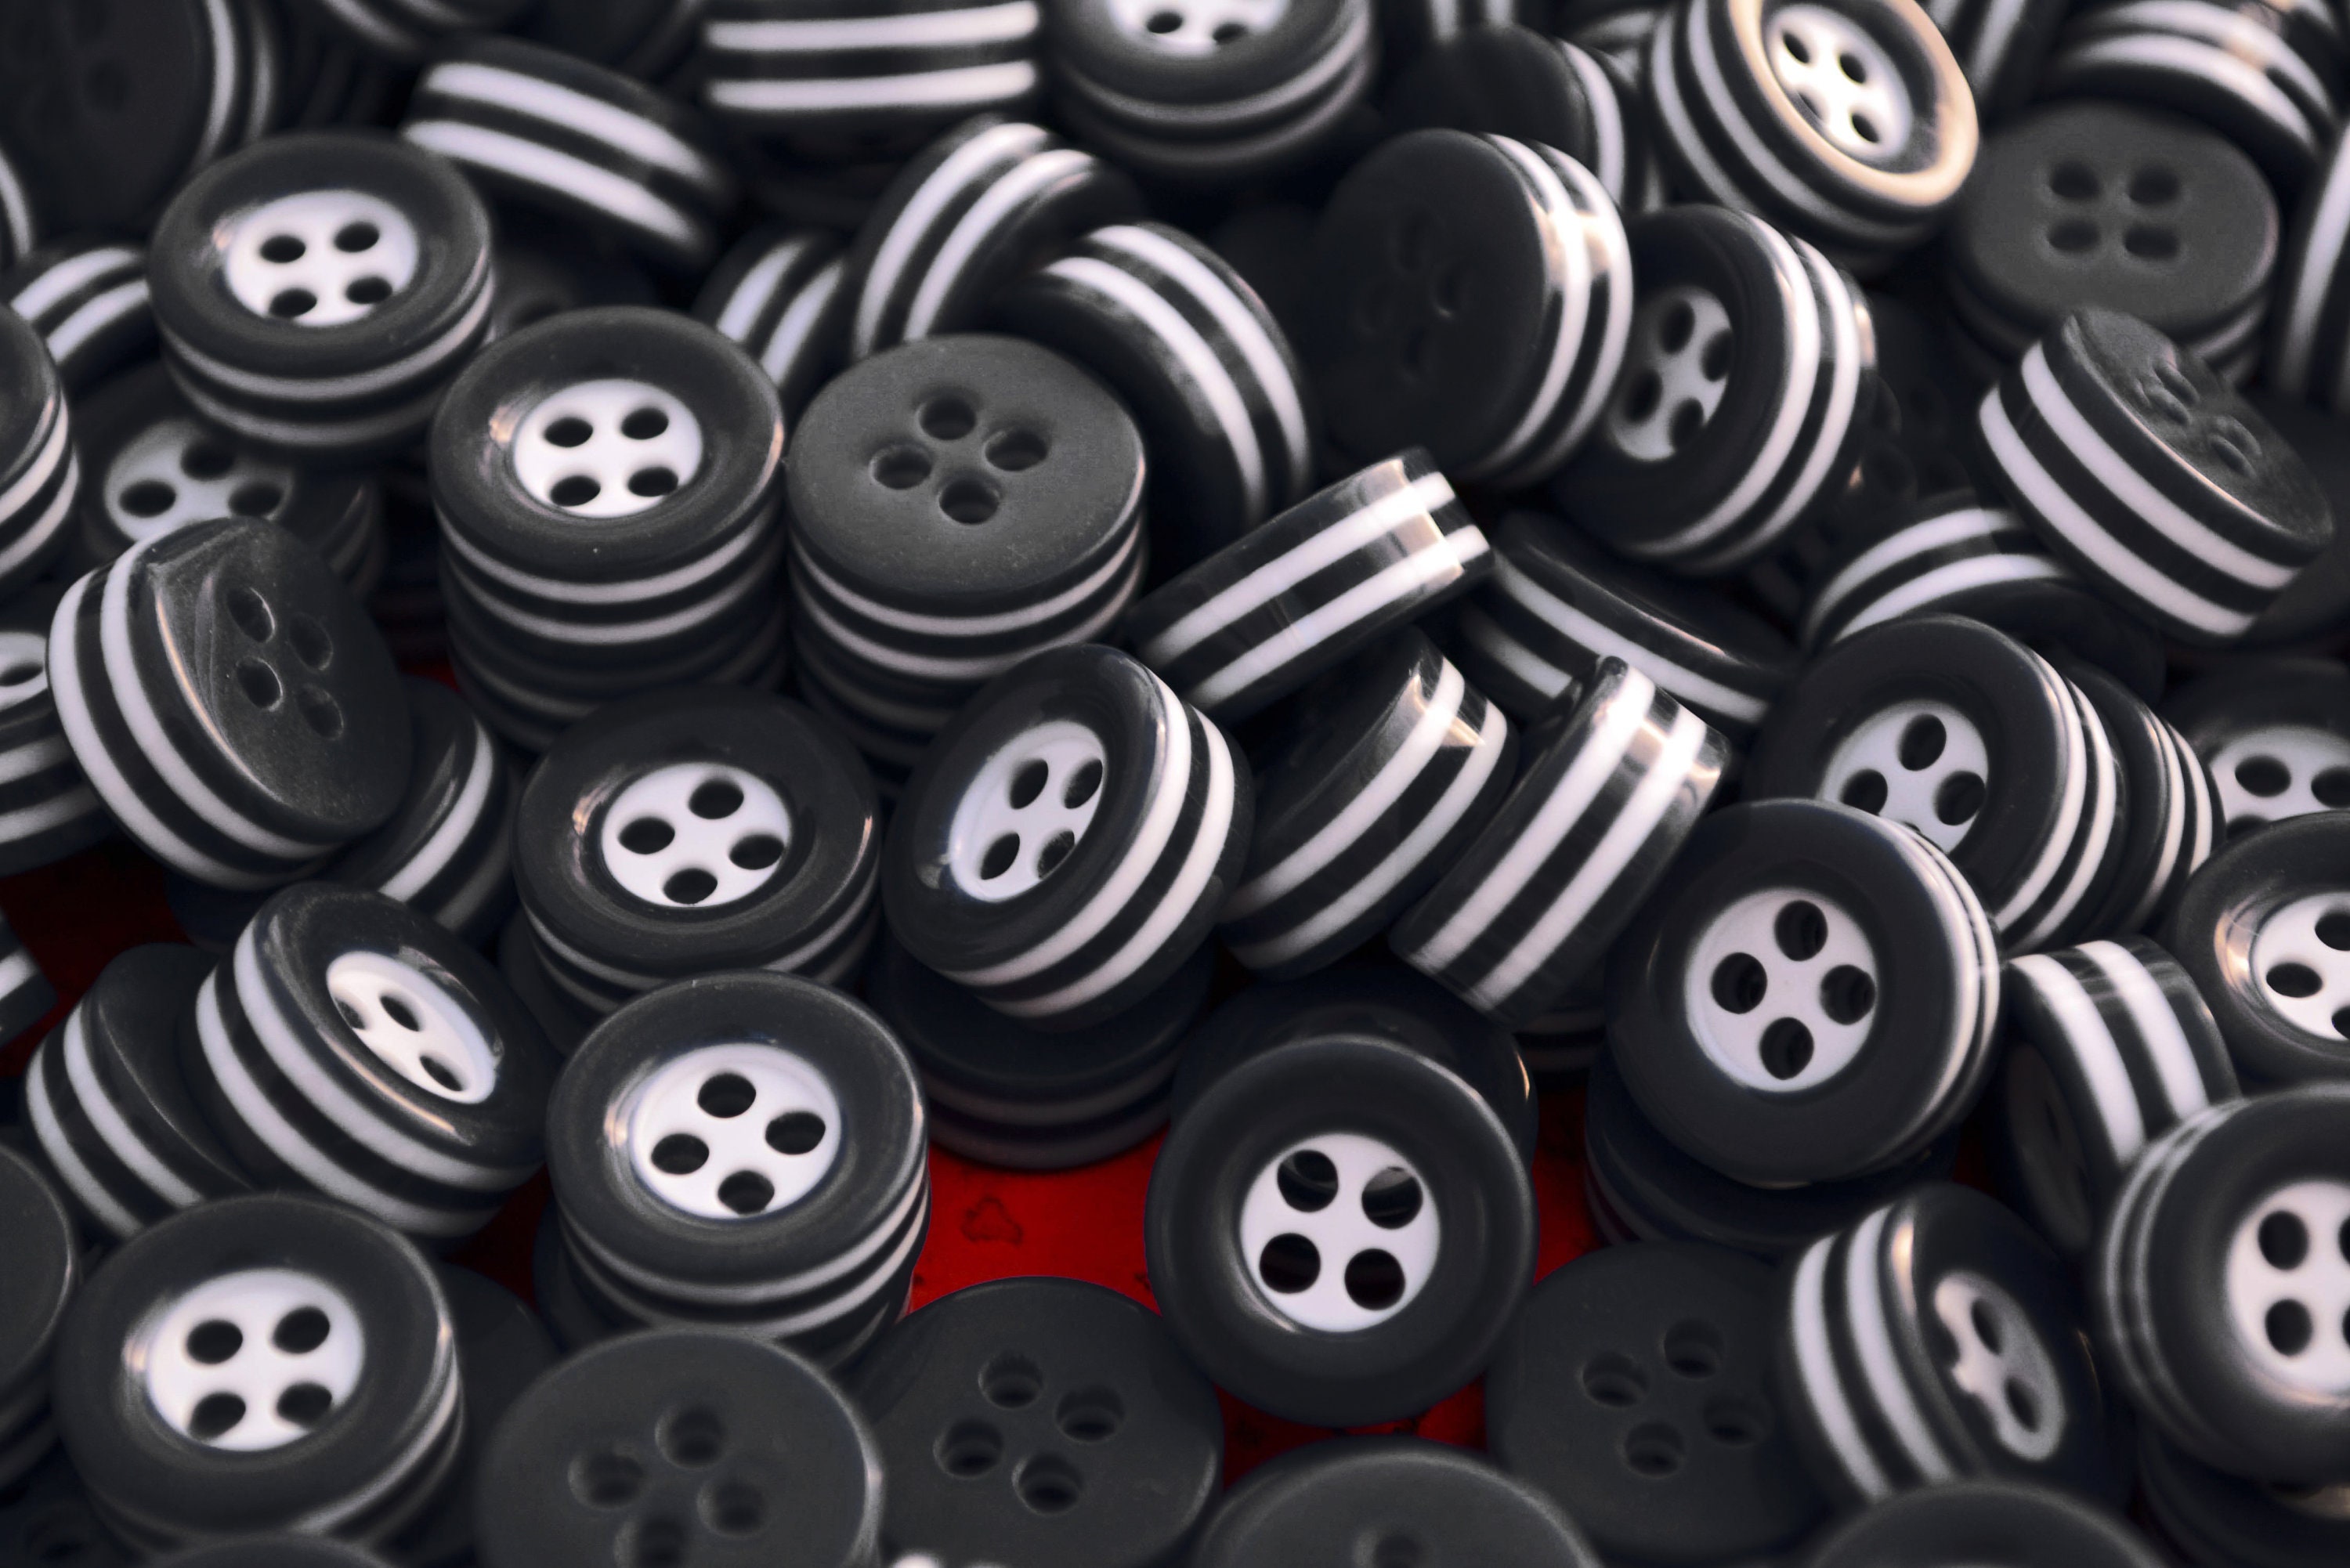  100 botones negros grandes de 5/8 pulgadas para coser